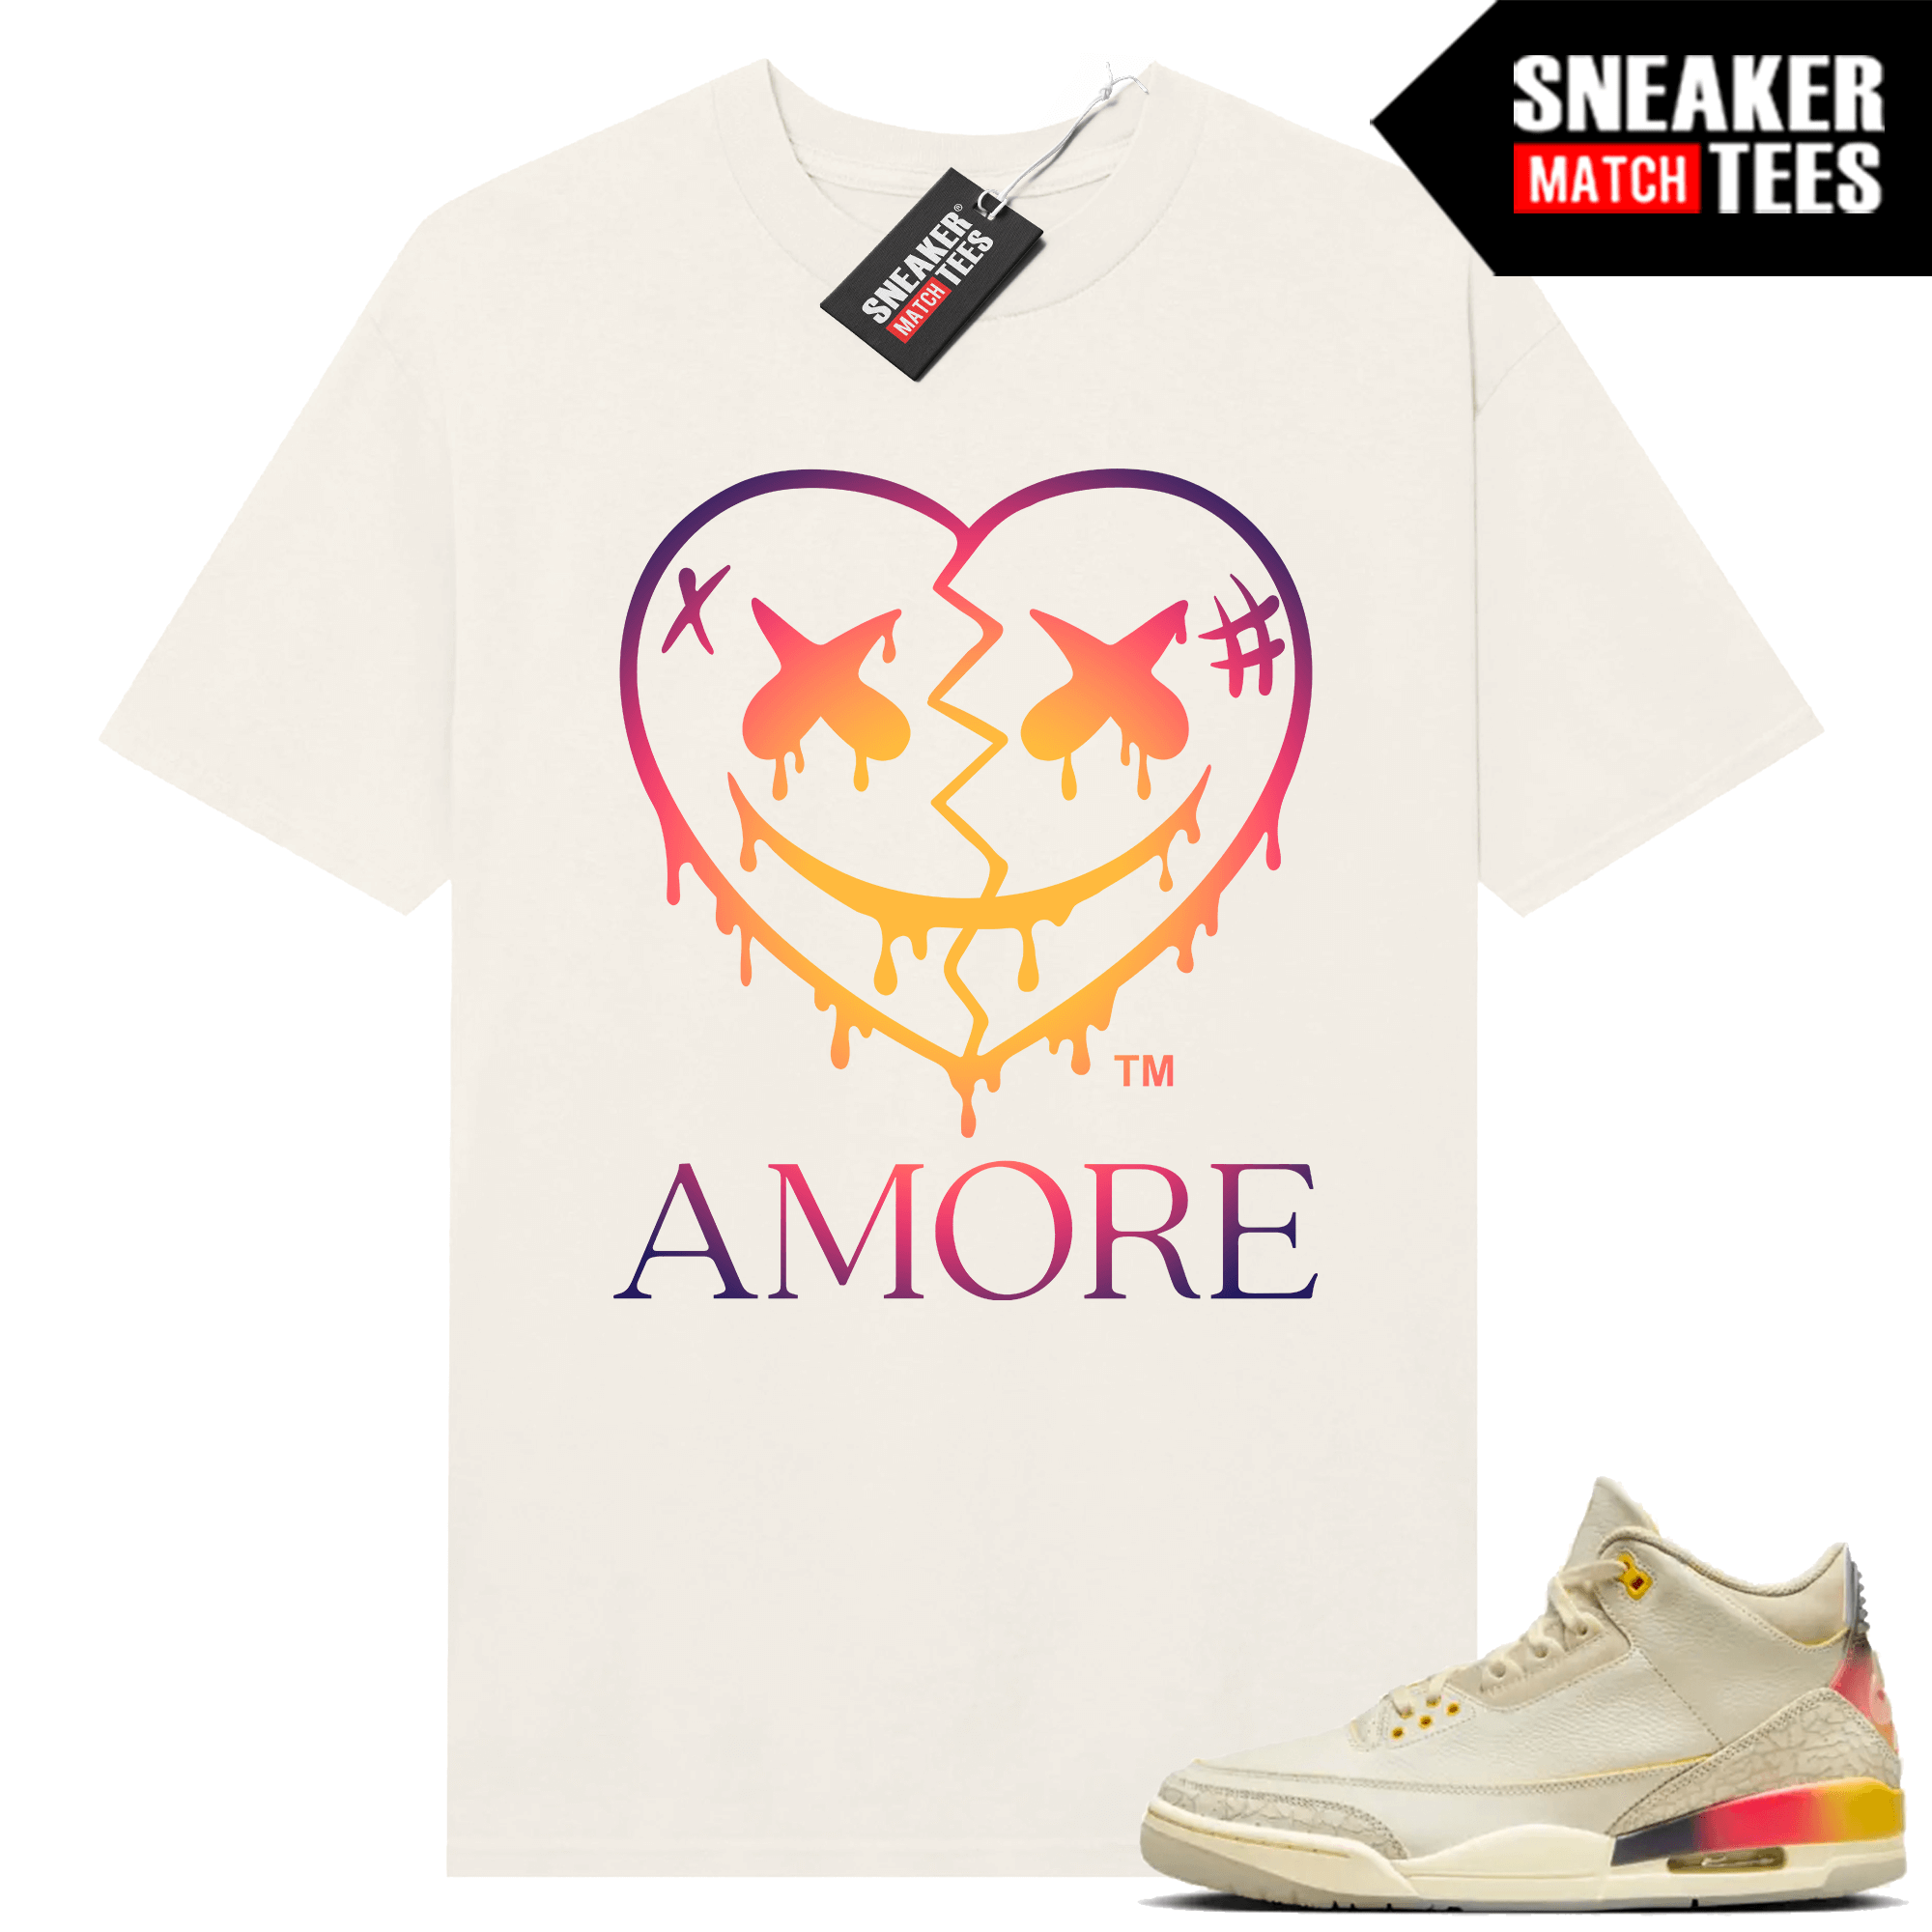 Jordan 3 J Balvin Sneaker Match T-shirt Sail AMORE Crazy Love Heart